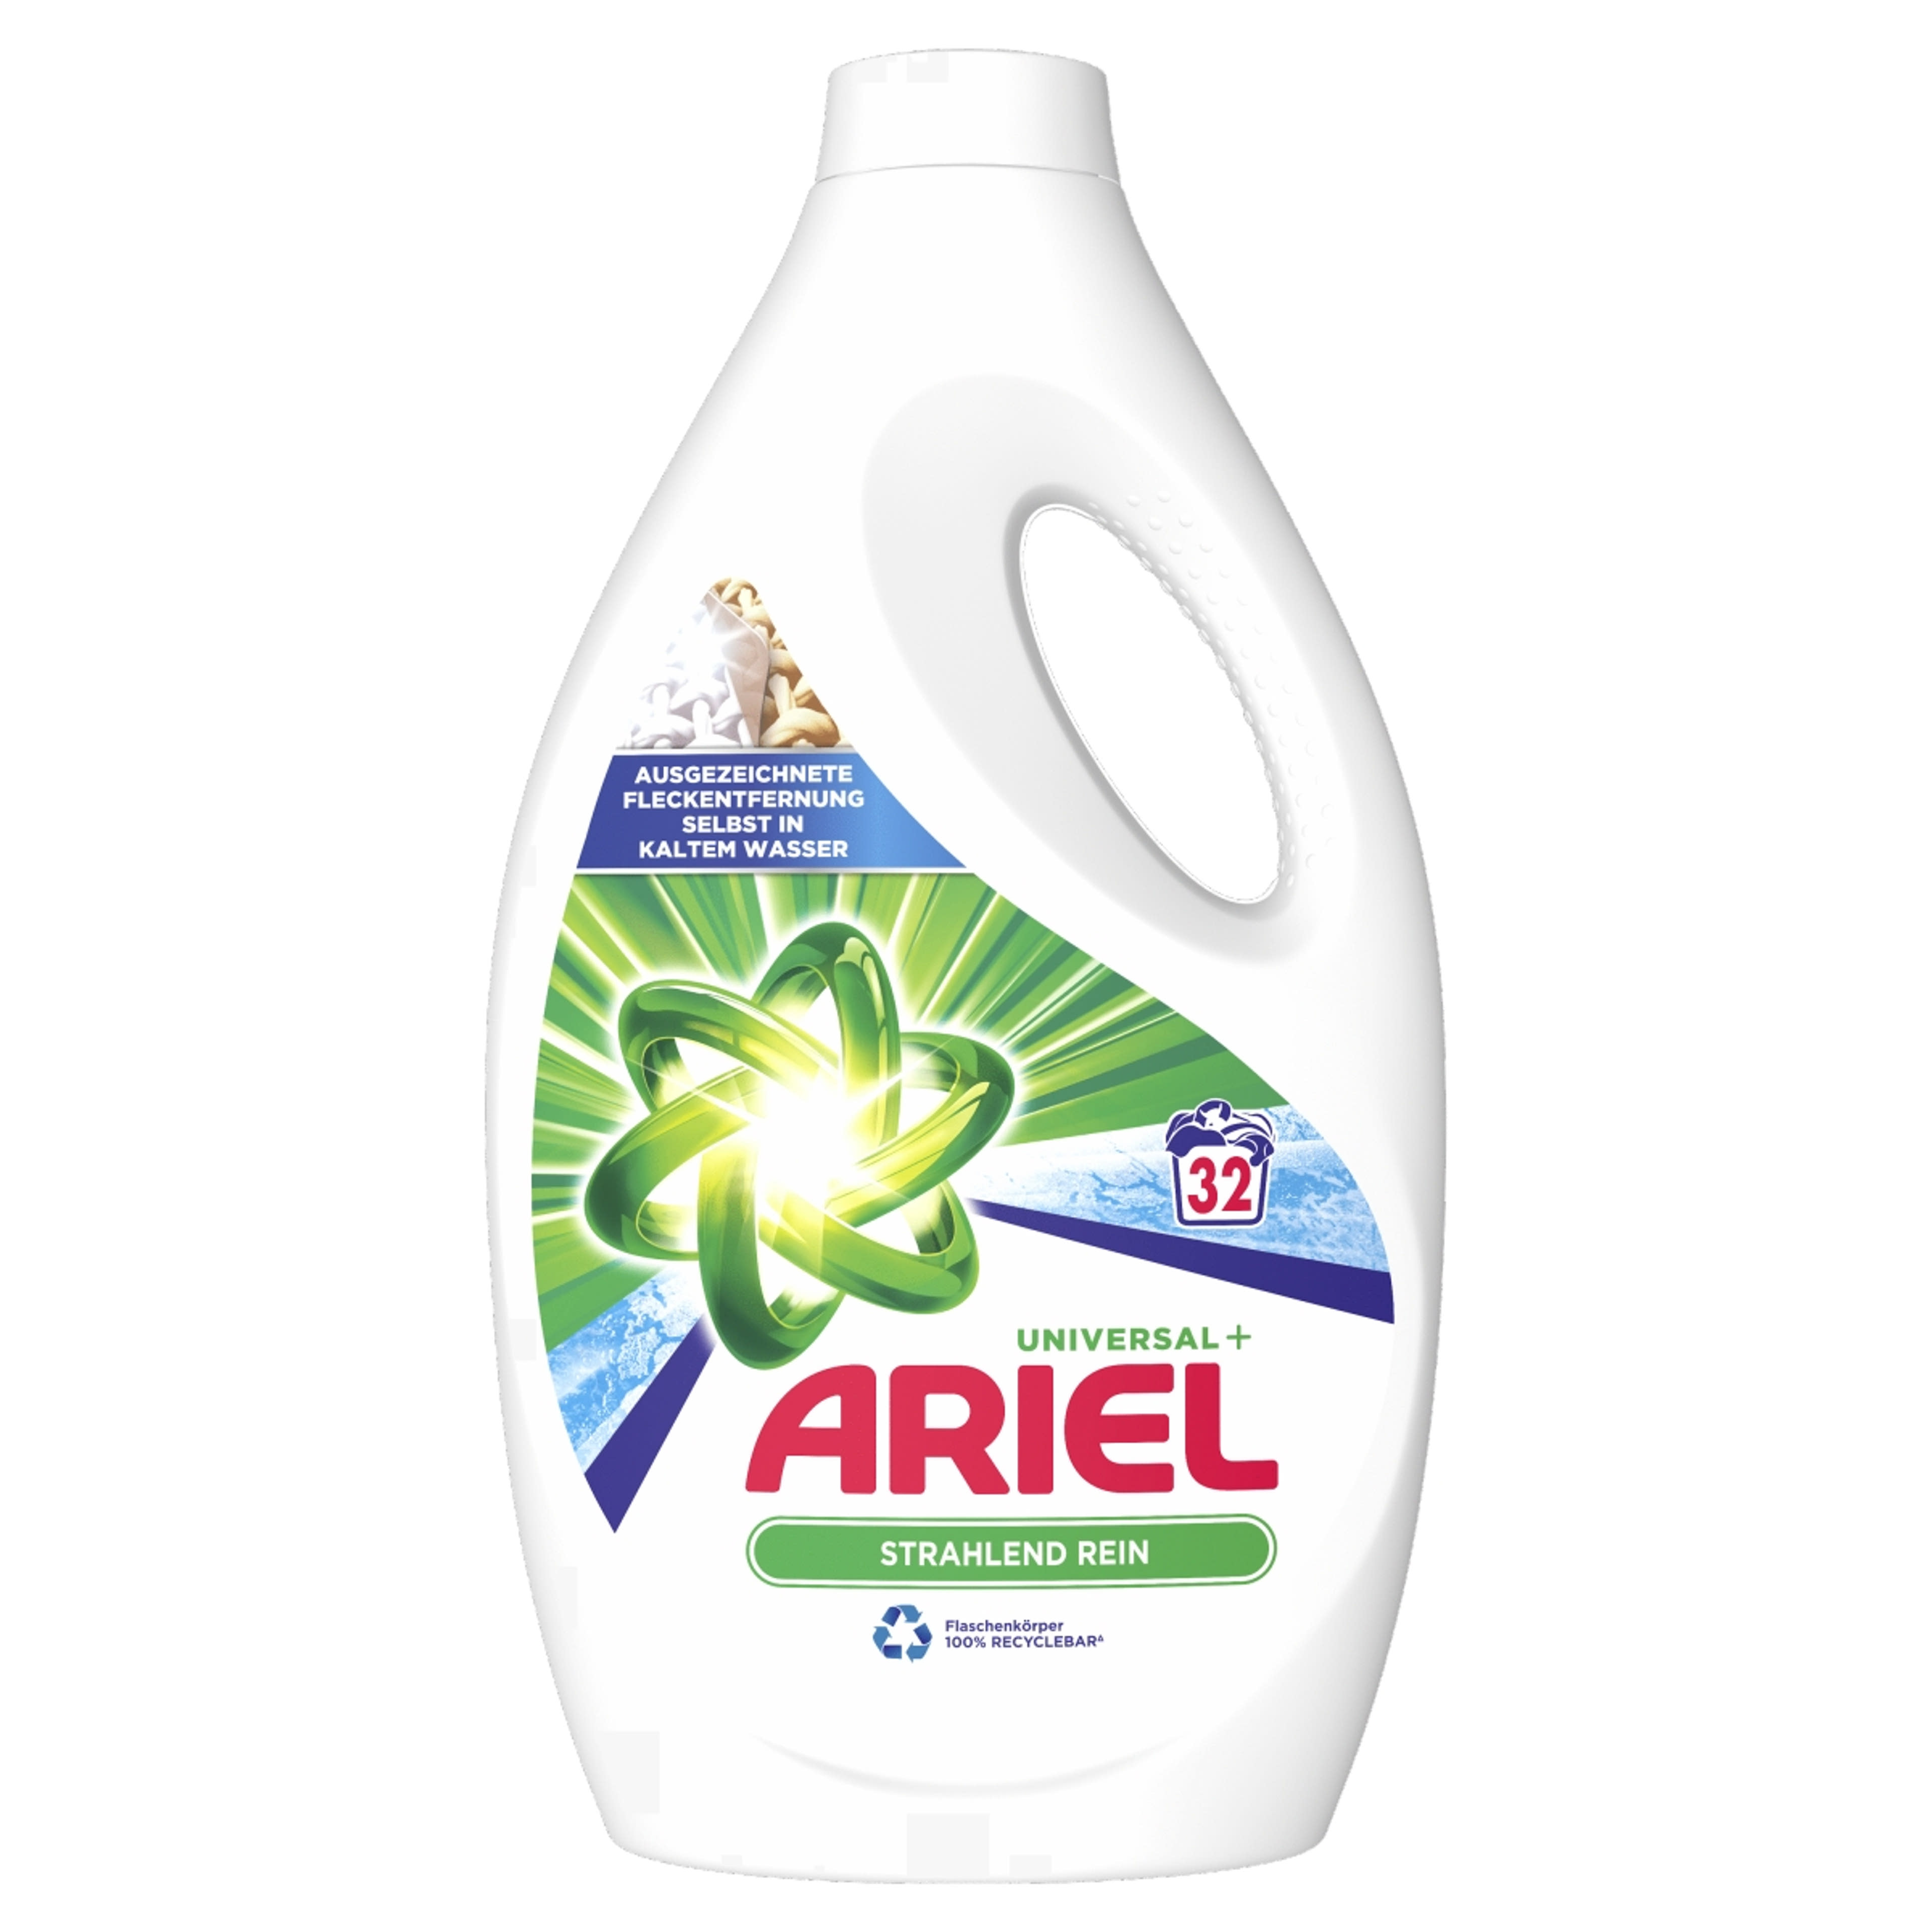 Ariel Universal folyékony mosószer, 32 mosáshoz - 1760 ml